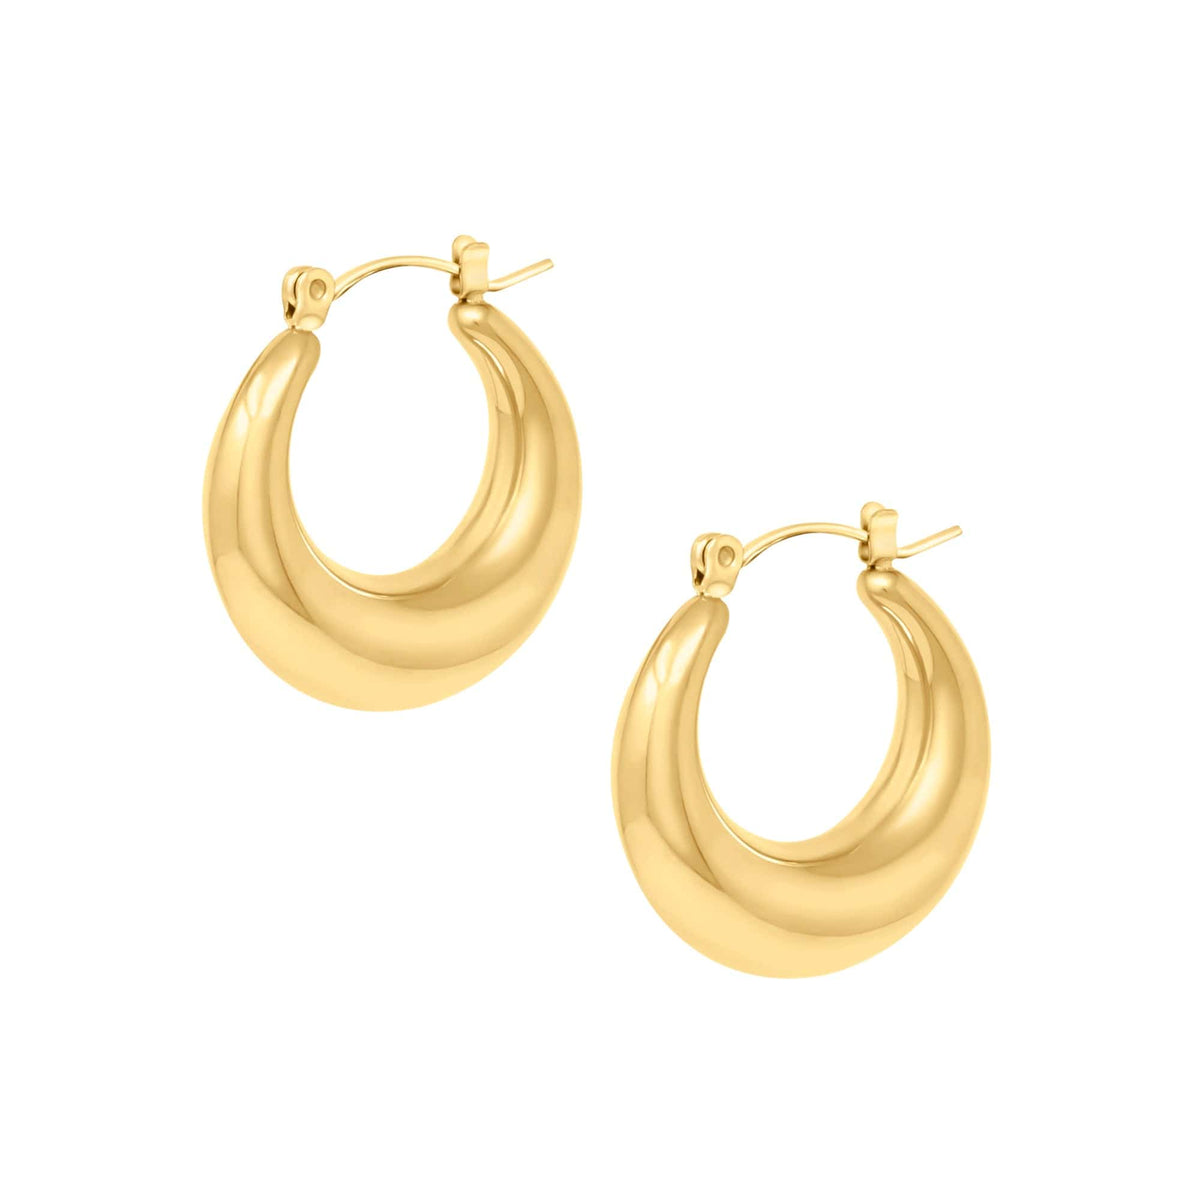 BohoMoon Stainless Steel Ana Hoop Earrings Gold